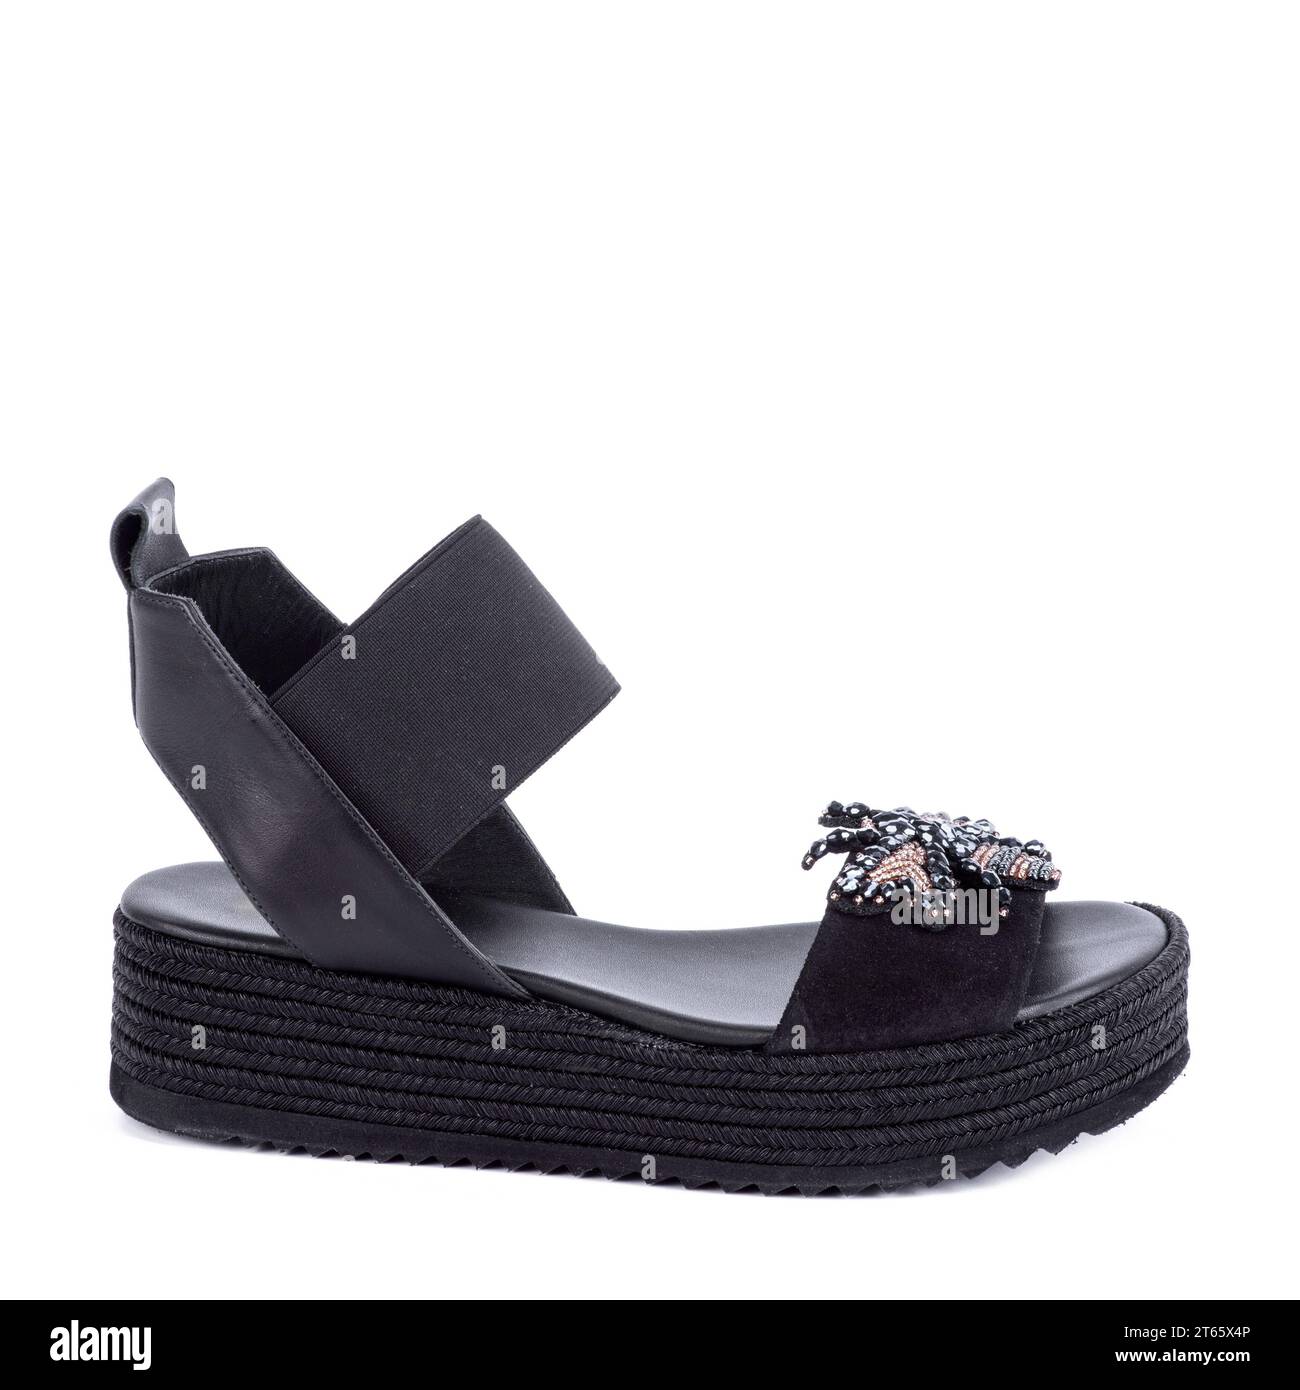 Chaussures noires d'été féminines confortables tendance (mule) sur fond blanc. Design pour un blog de mode. Publicité pour magasin de chaussures. Vente au détail, point de vente, e-comm Banque D'Images